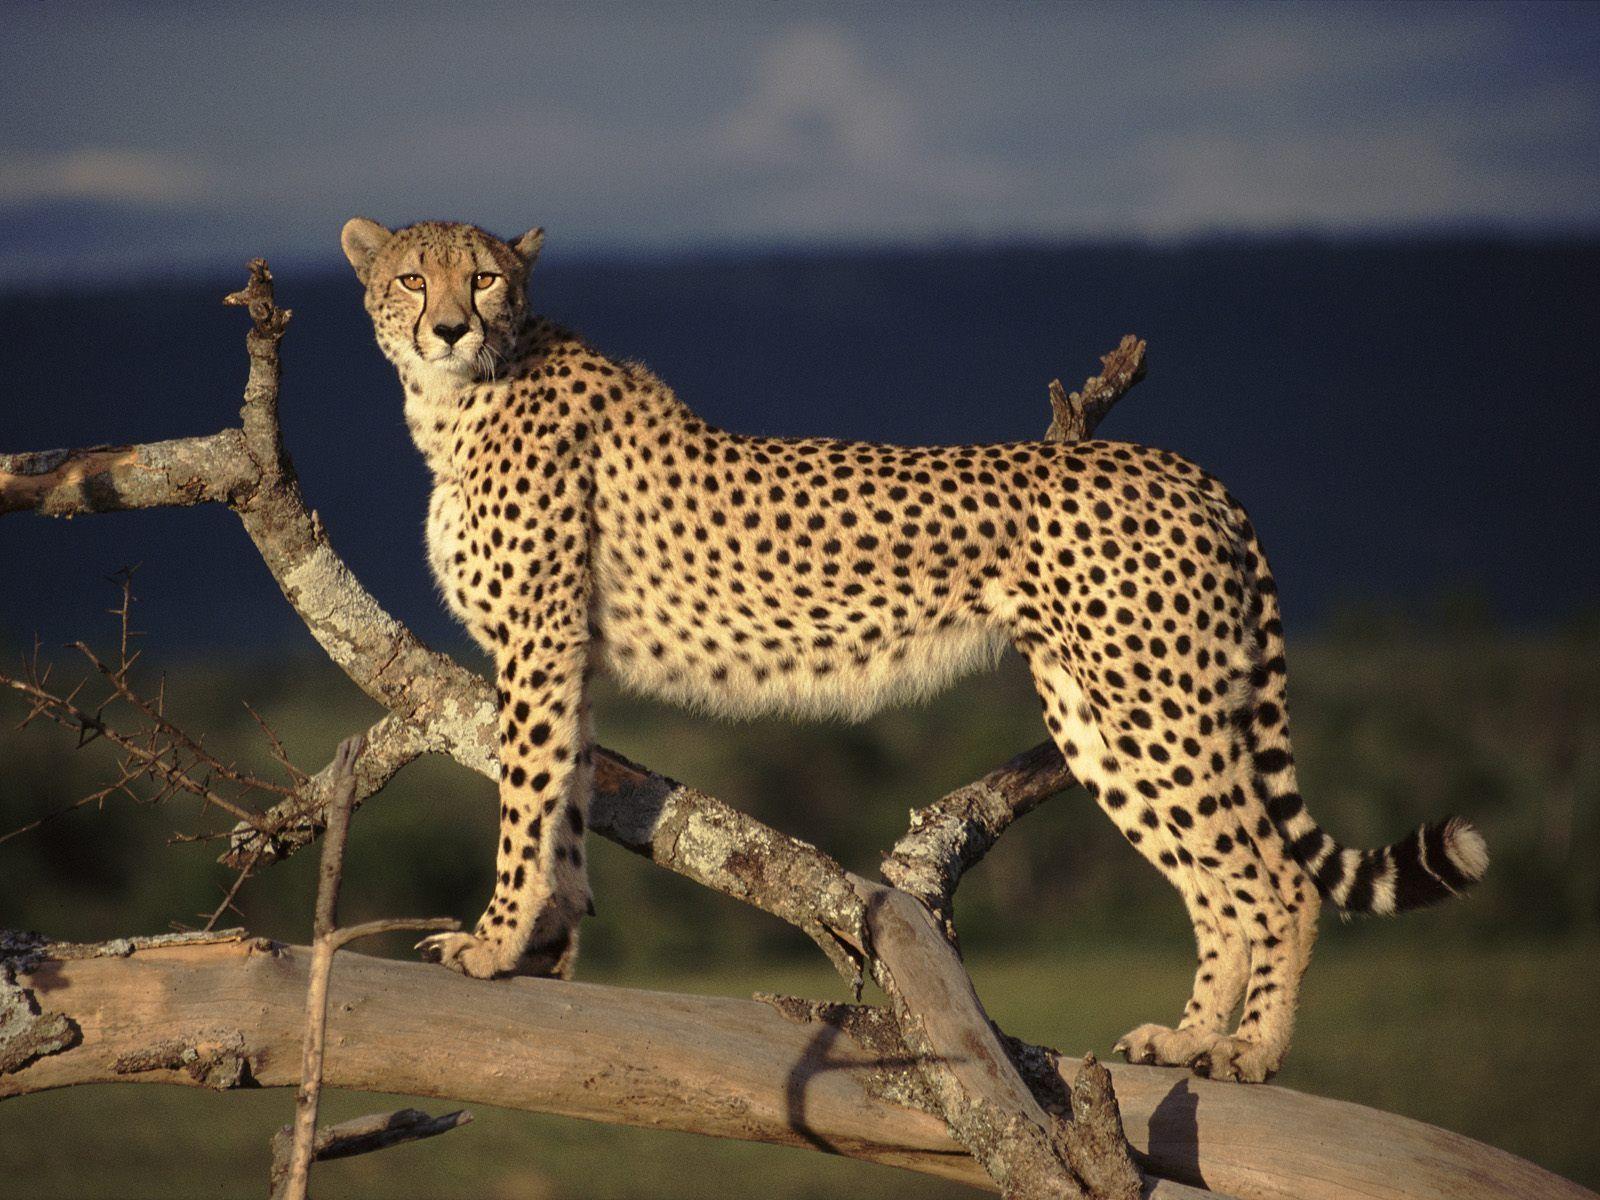 Free Download Cheetah Image